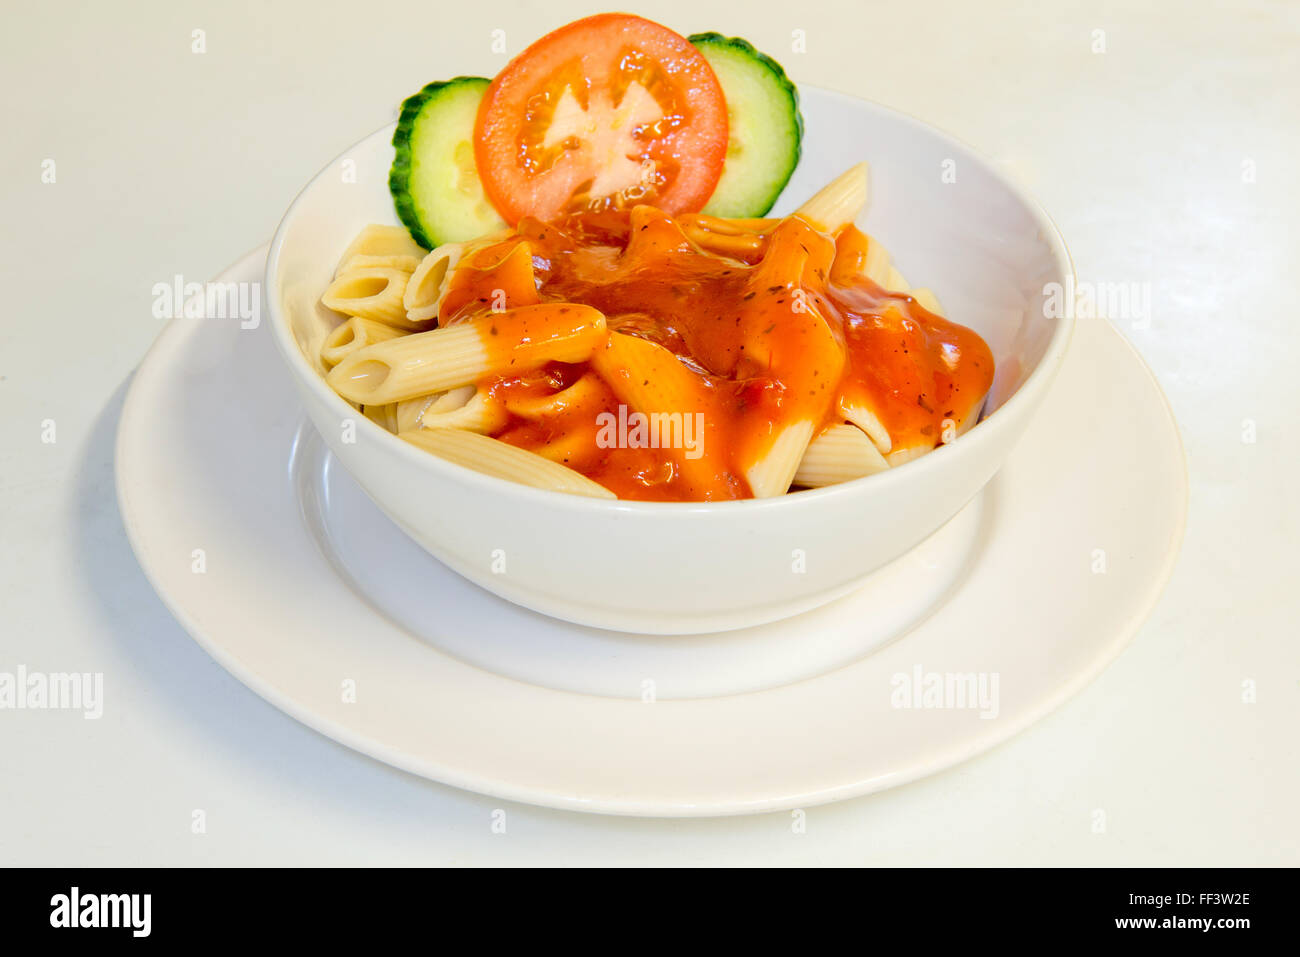 La salsa di pomodoro e la pasta in una ciotola con insalata di piccole dimensioni Foto Stock